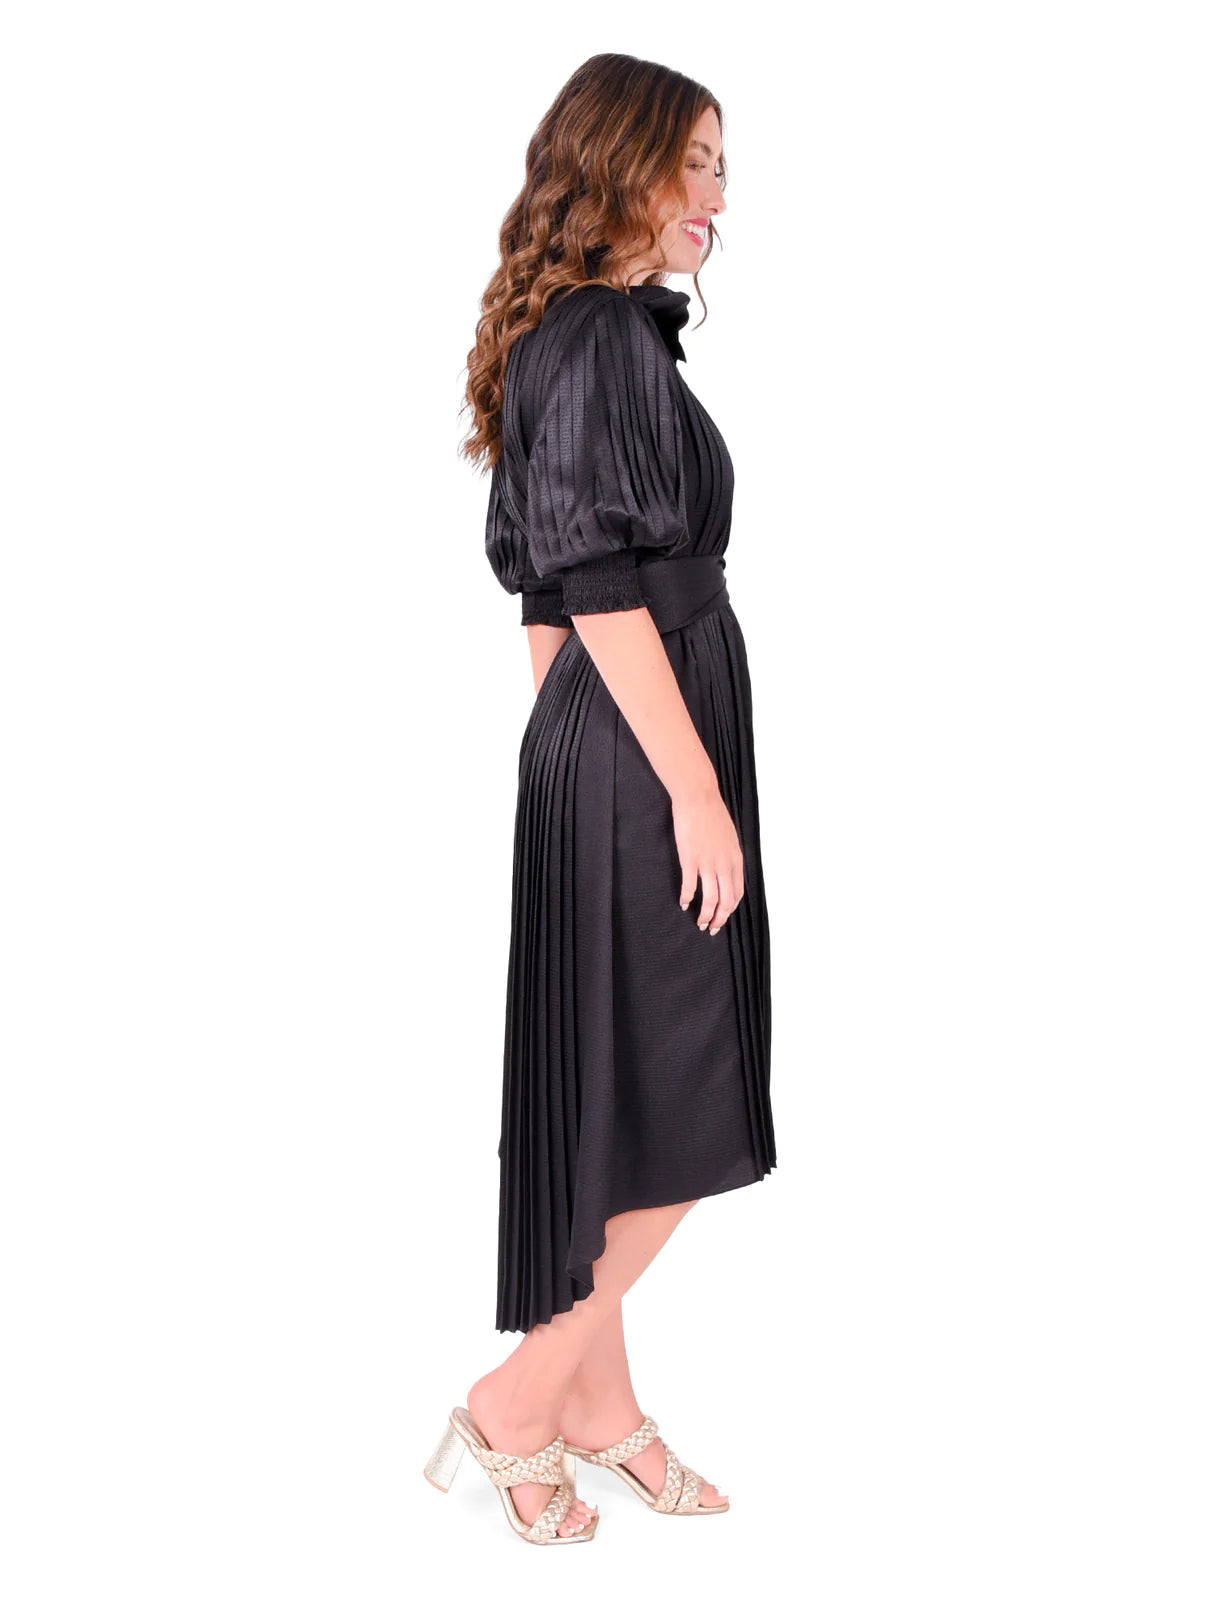 Emily McCarthy Rowan Dress - Black